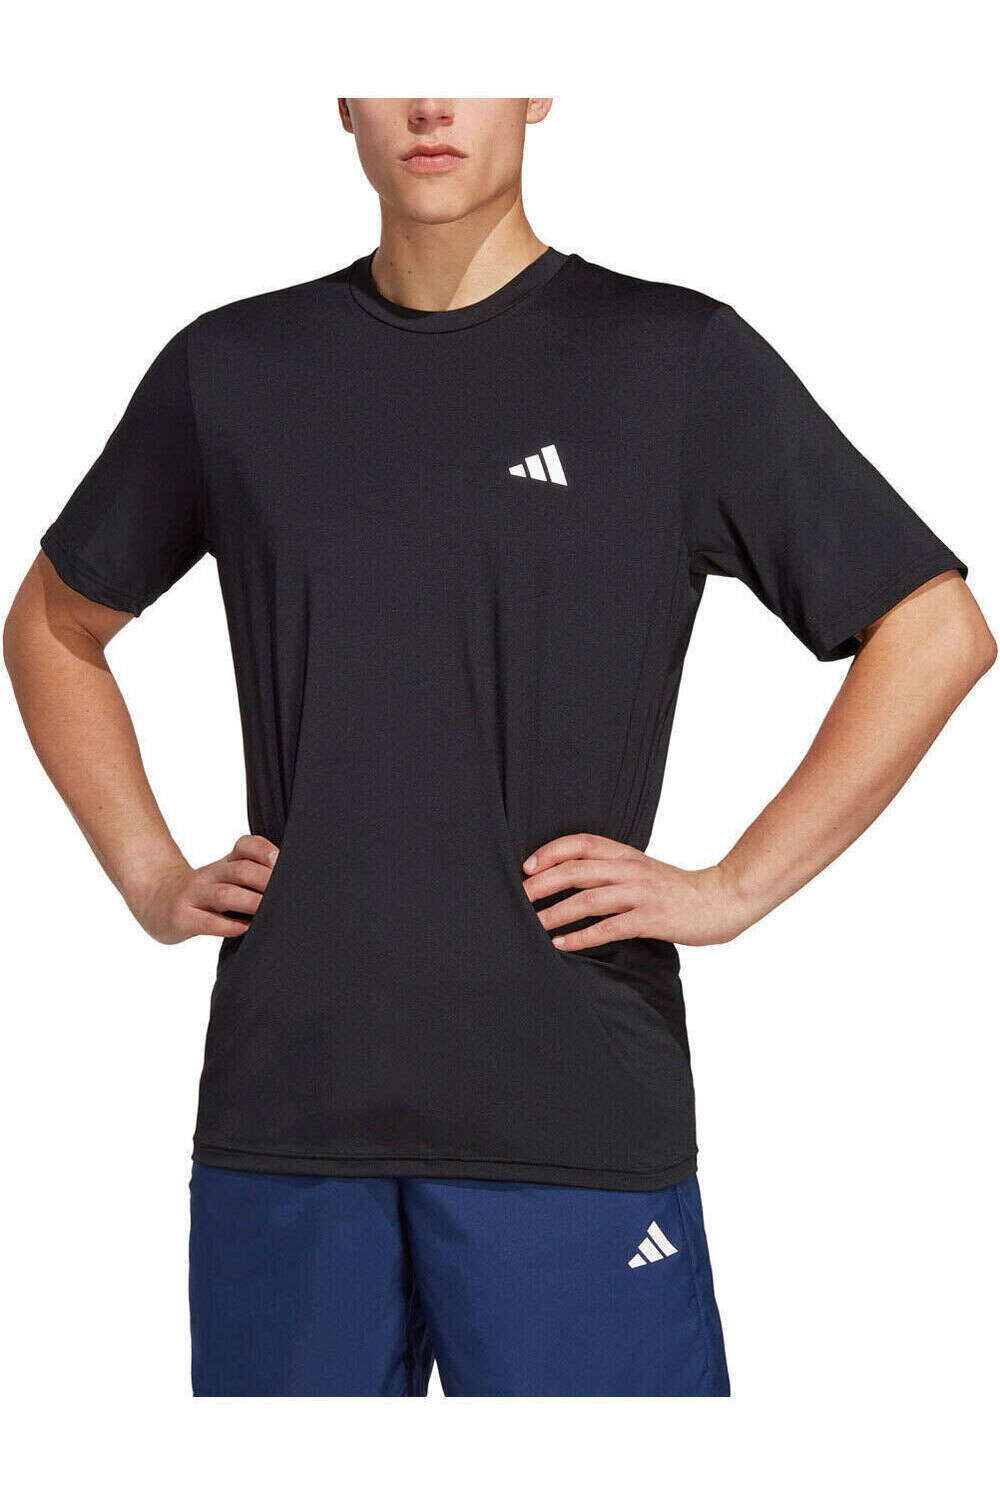 adidas camiseta fitness hombre Train Essentials Stretch Training vista frontal